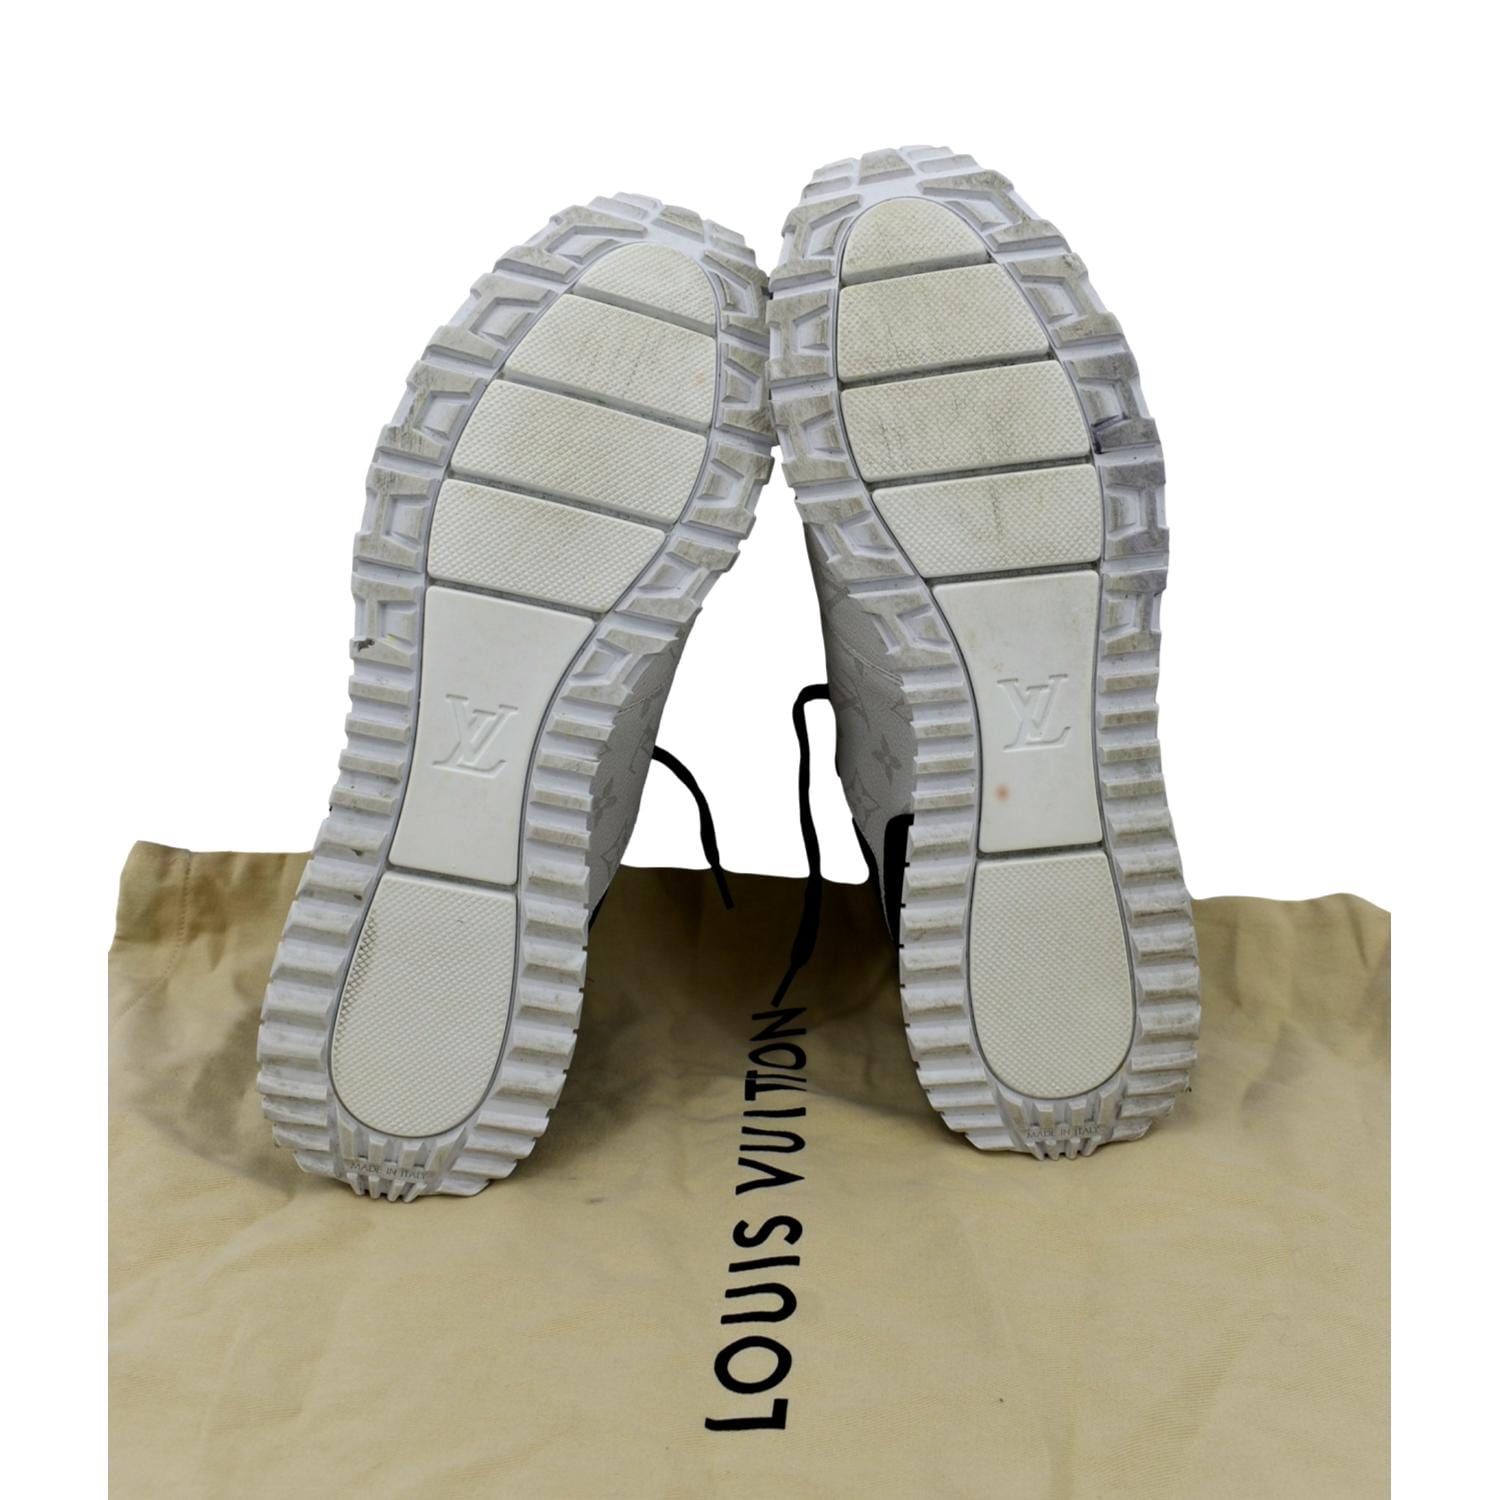 Louis Vuitton, Shoes, Louis Vuitton Sneakers